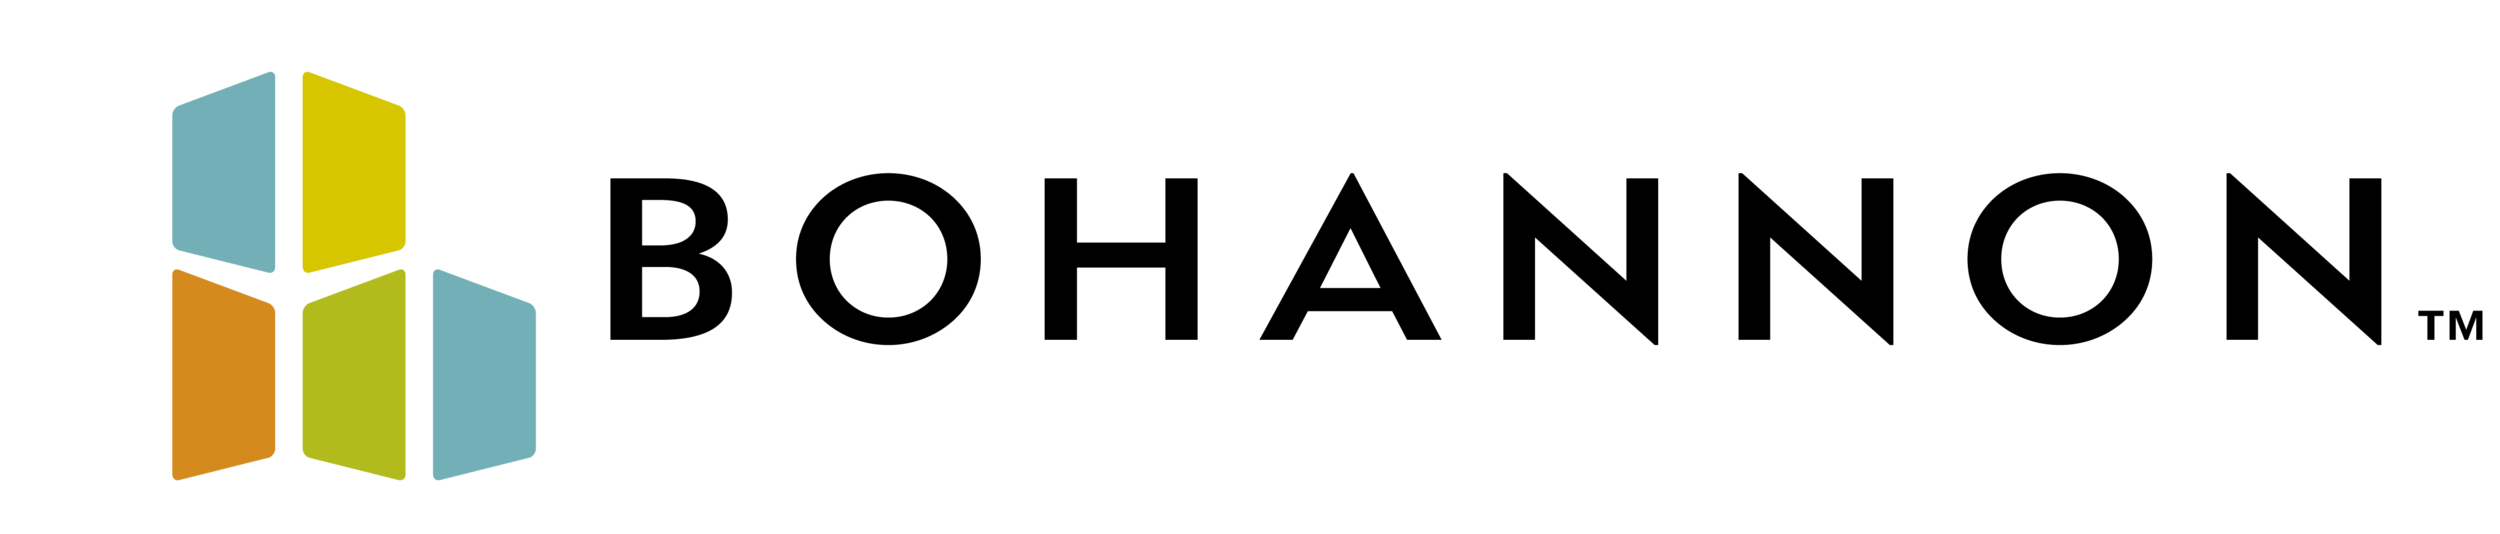 File:Moët & Chandon logo.svg - Wikimedia Commons